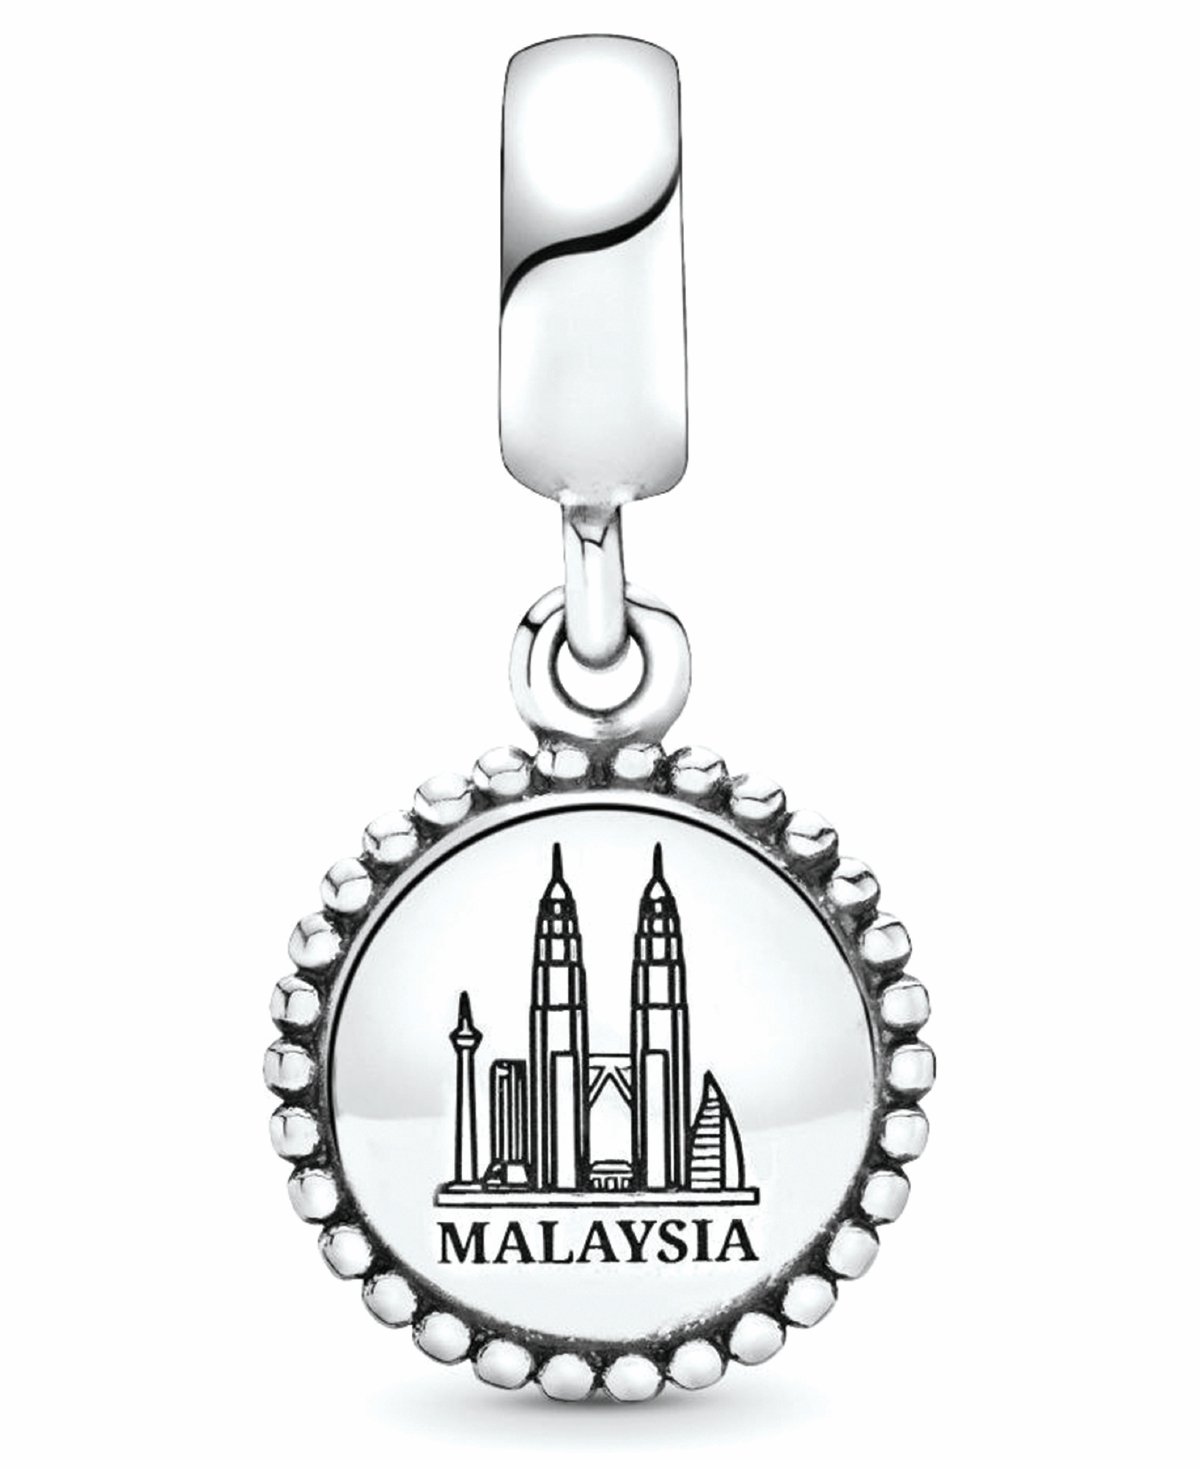 CHARM menarik dengan rekaan Menara Berkembar Petronas yang ikonik untuk meraikan sambutan Hari Kebangsaan dan Hari Malaysia.